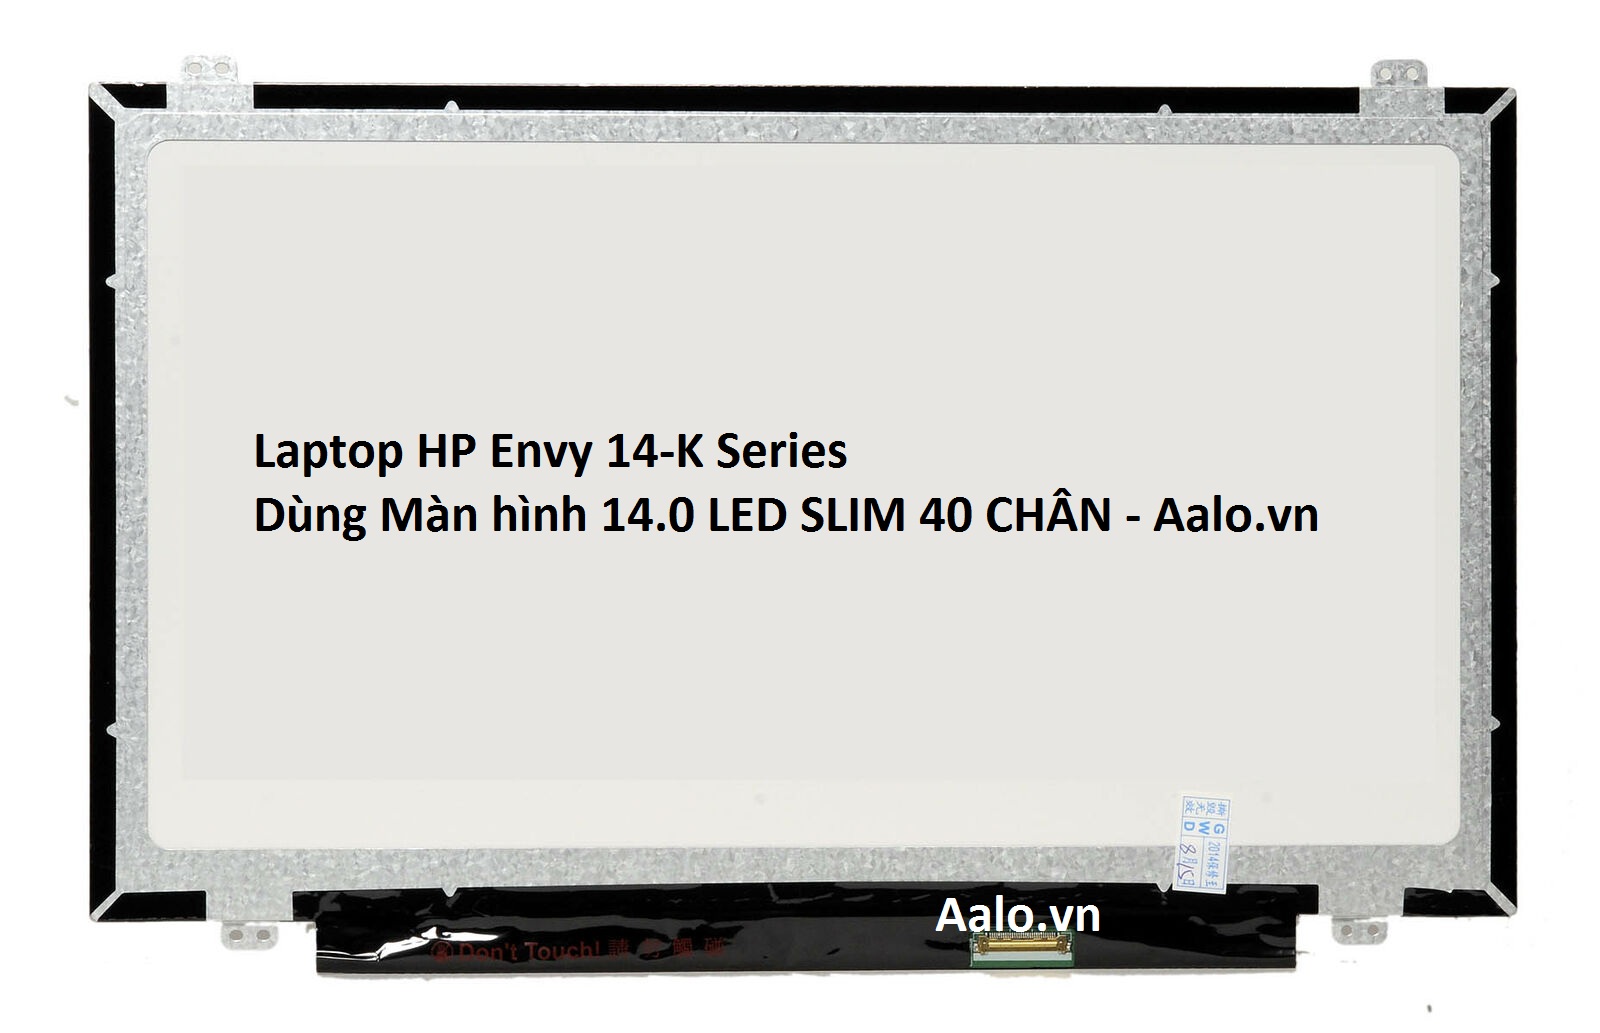 Màn hình Laptop HP Envy 14-K Series - Aalo.vn